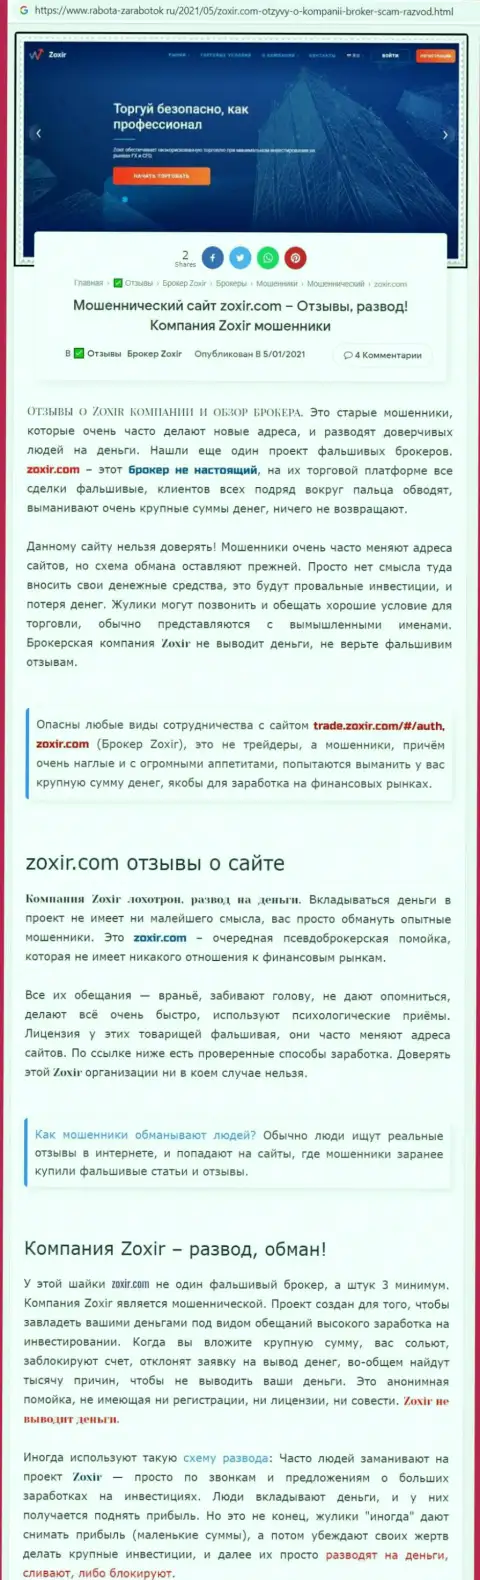 Автор обзорной статьи рекомендует не отправлять финансовые средства в Zoxir - ЗАБЕРУТ !